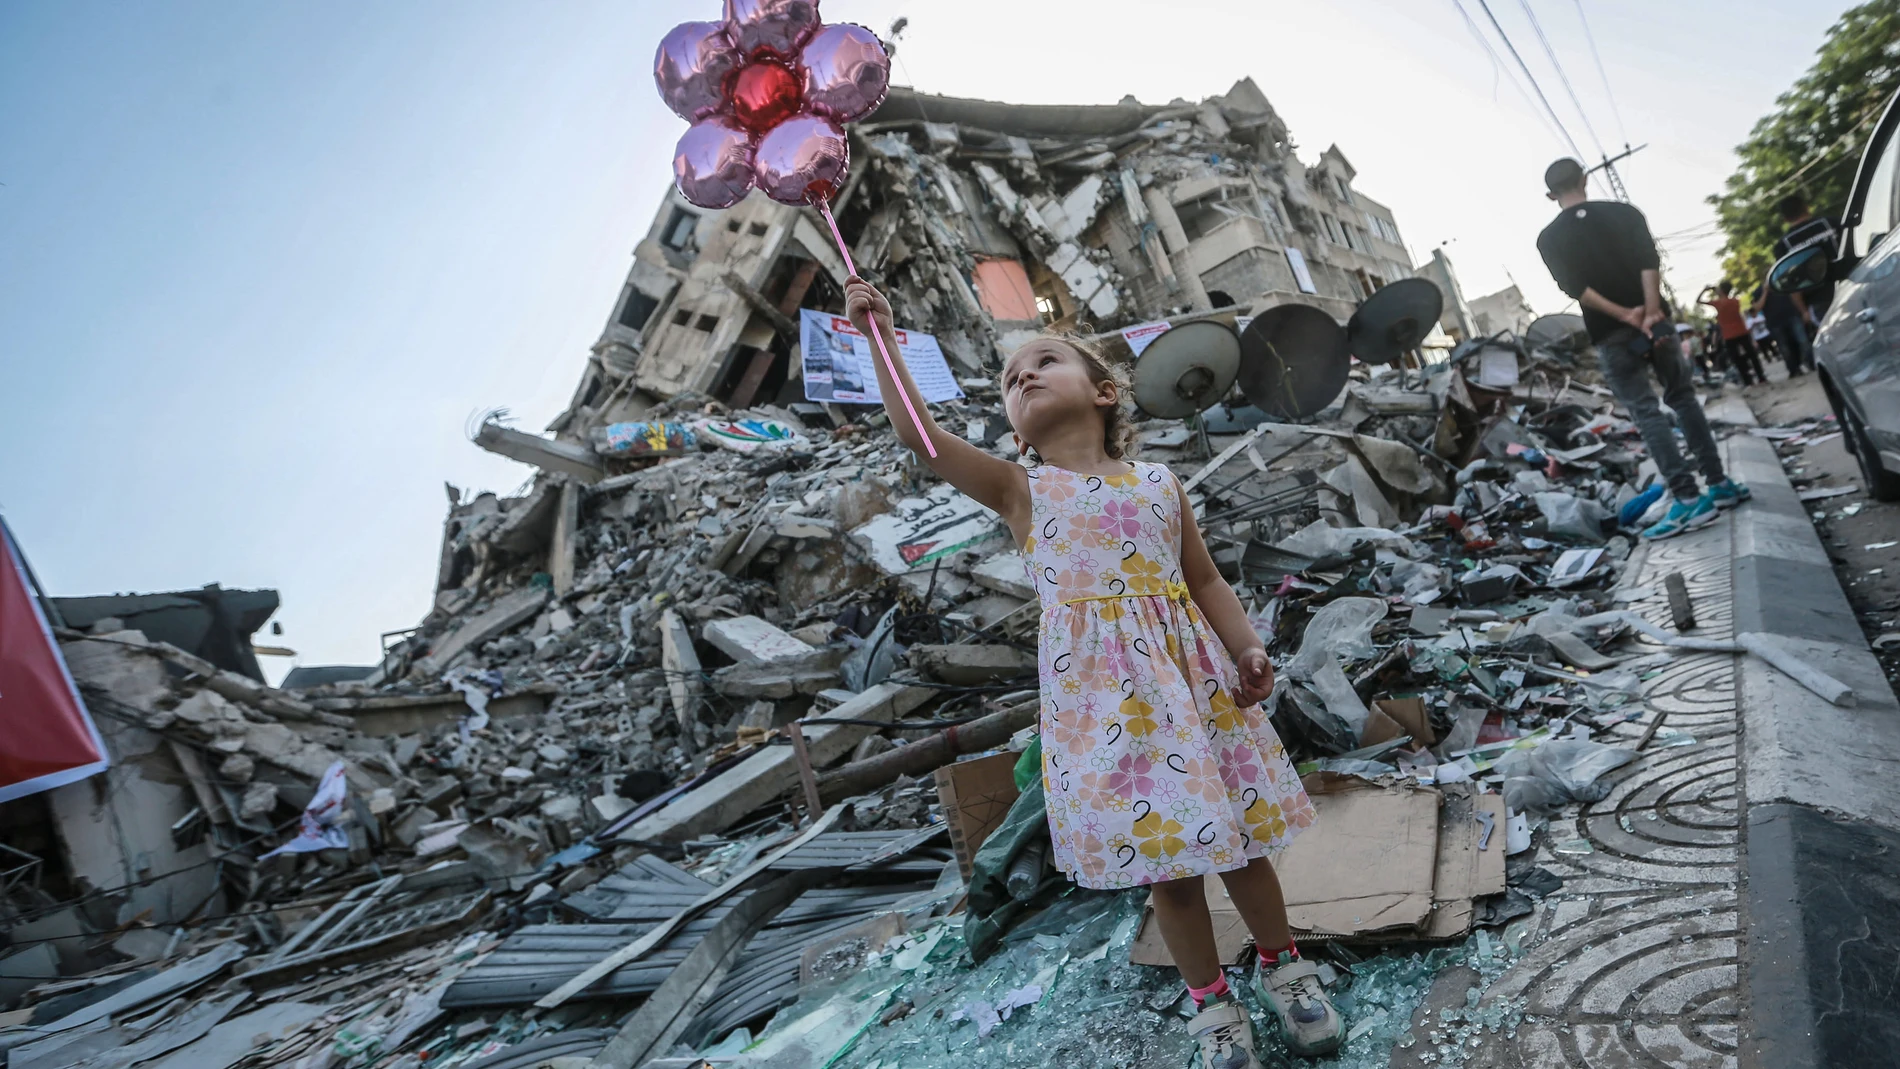 Una niña coge unos globos en medios de los escombros provocados durante los once días de ofensiva militar en Gaza